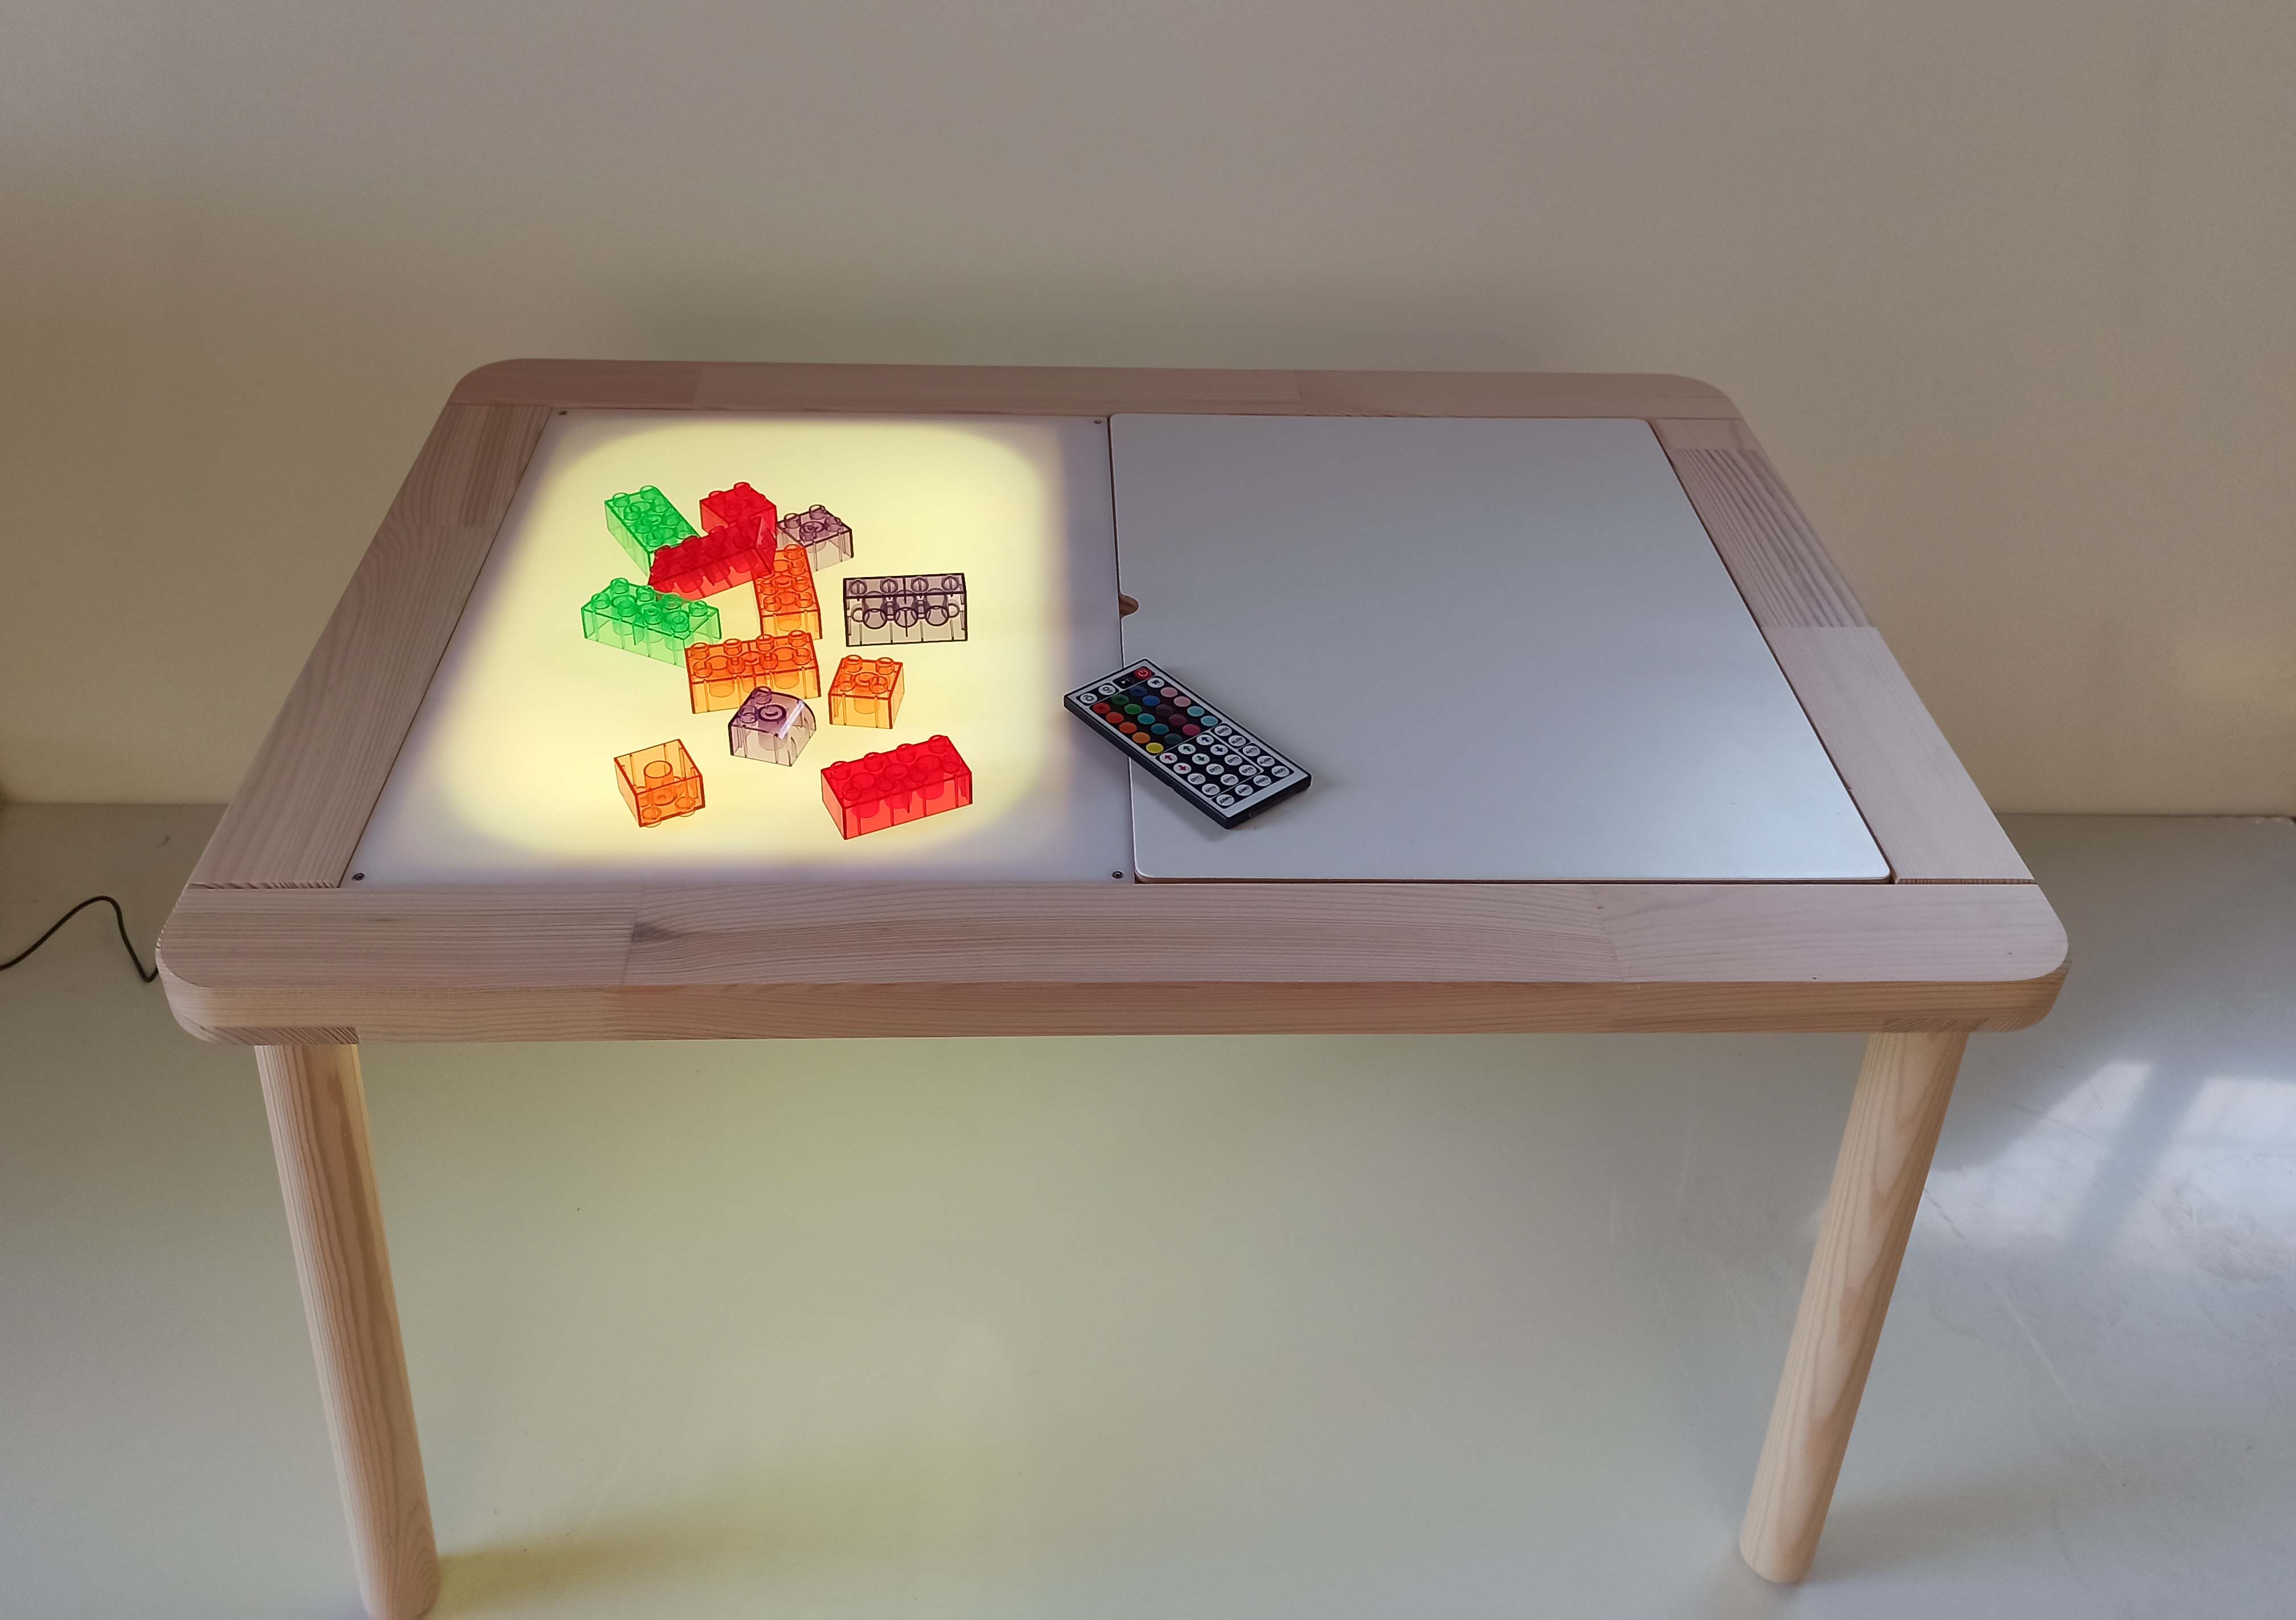 Cómo construir una mesa de luz paso a paso